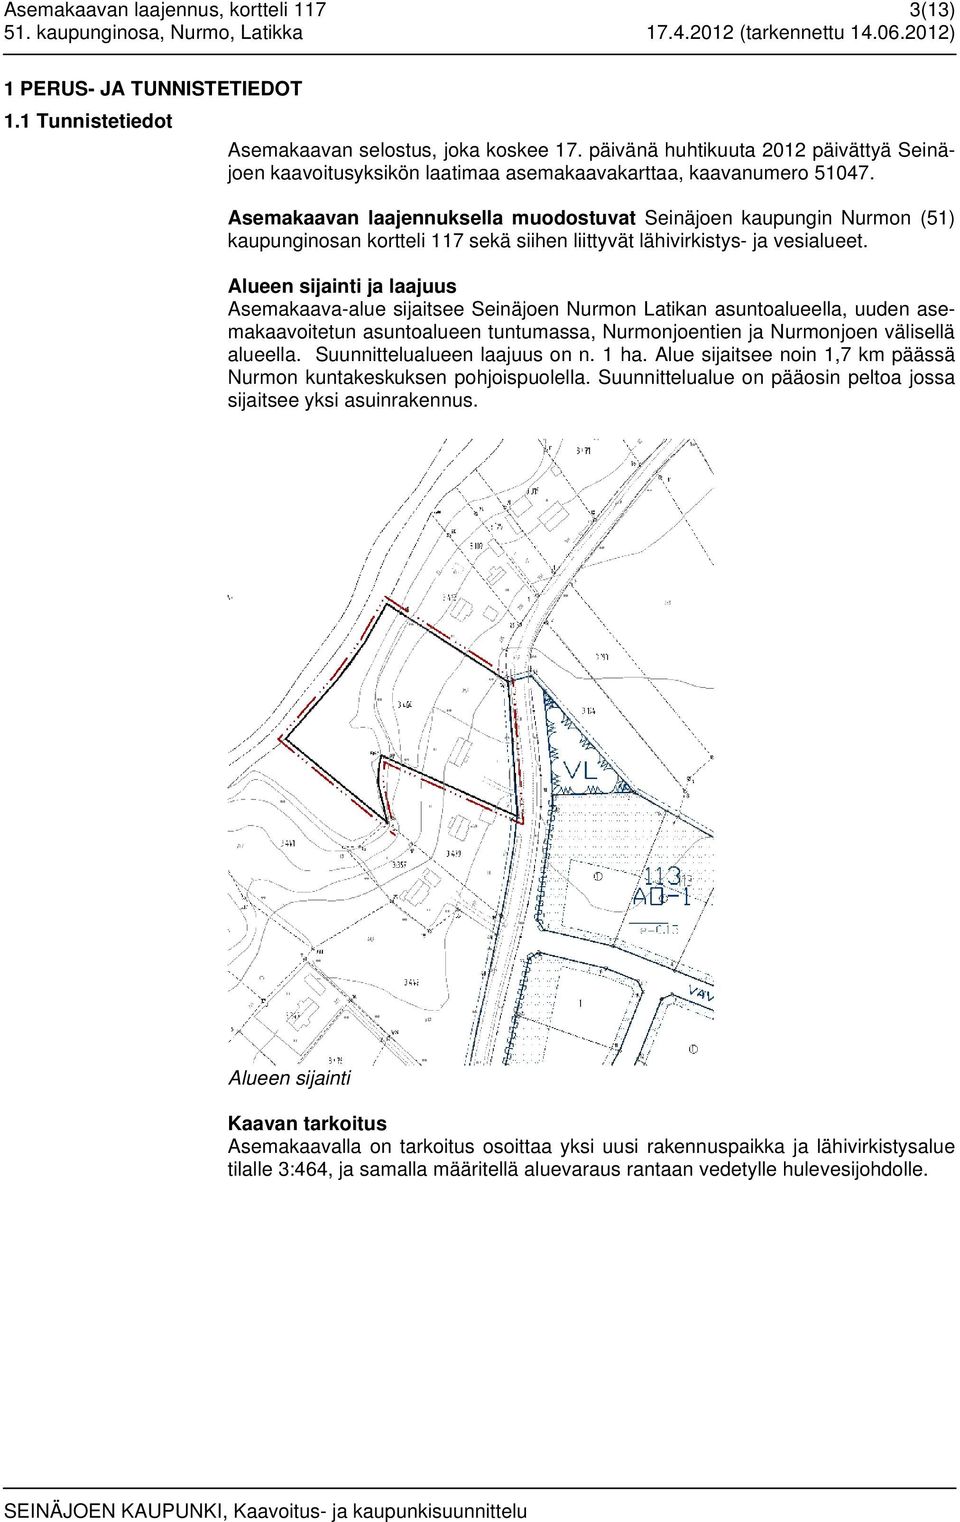 Asemakaavan laajennuksella muodostuvat Seinäjoen kaupungin Nurmon (51) kaupunginosan kortteli 117 sekä siihen liittyvät lähivirkistys- ja vesialueet.